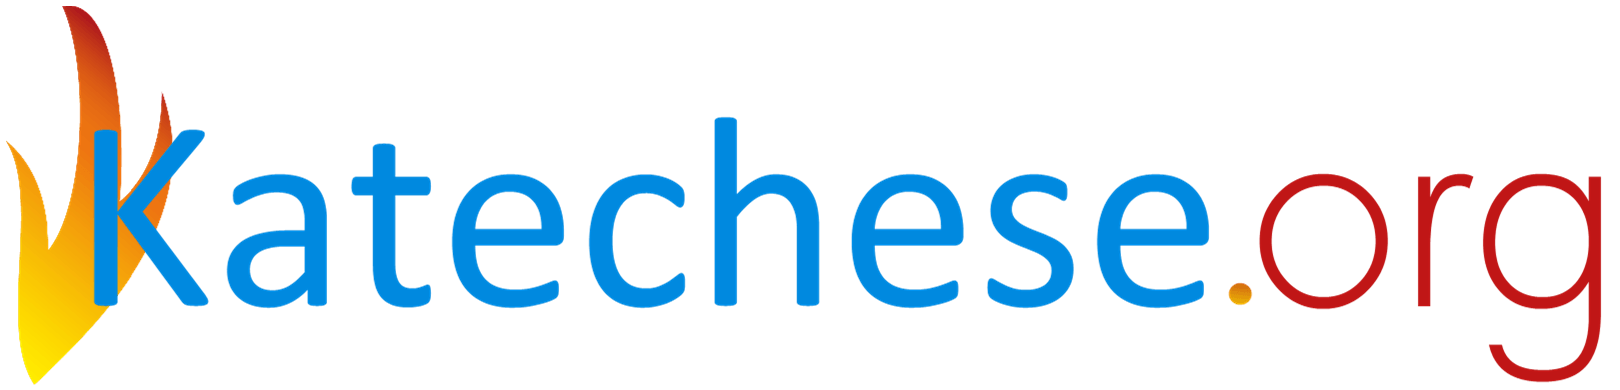 Katechese.org